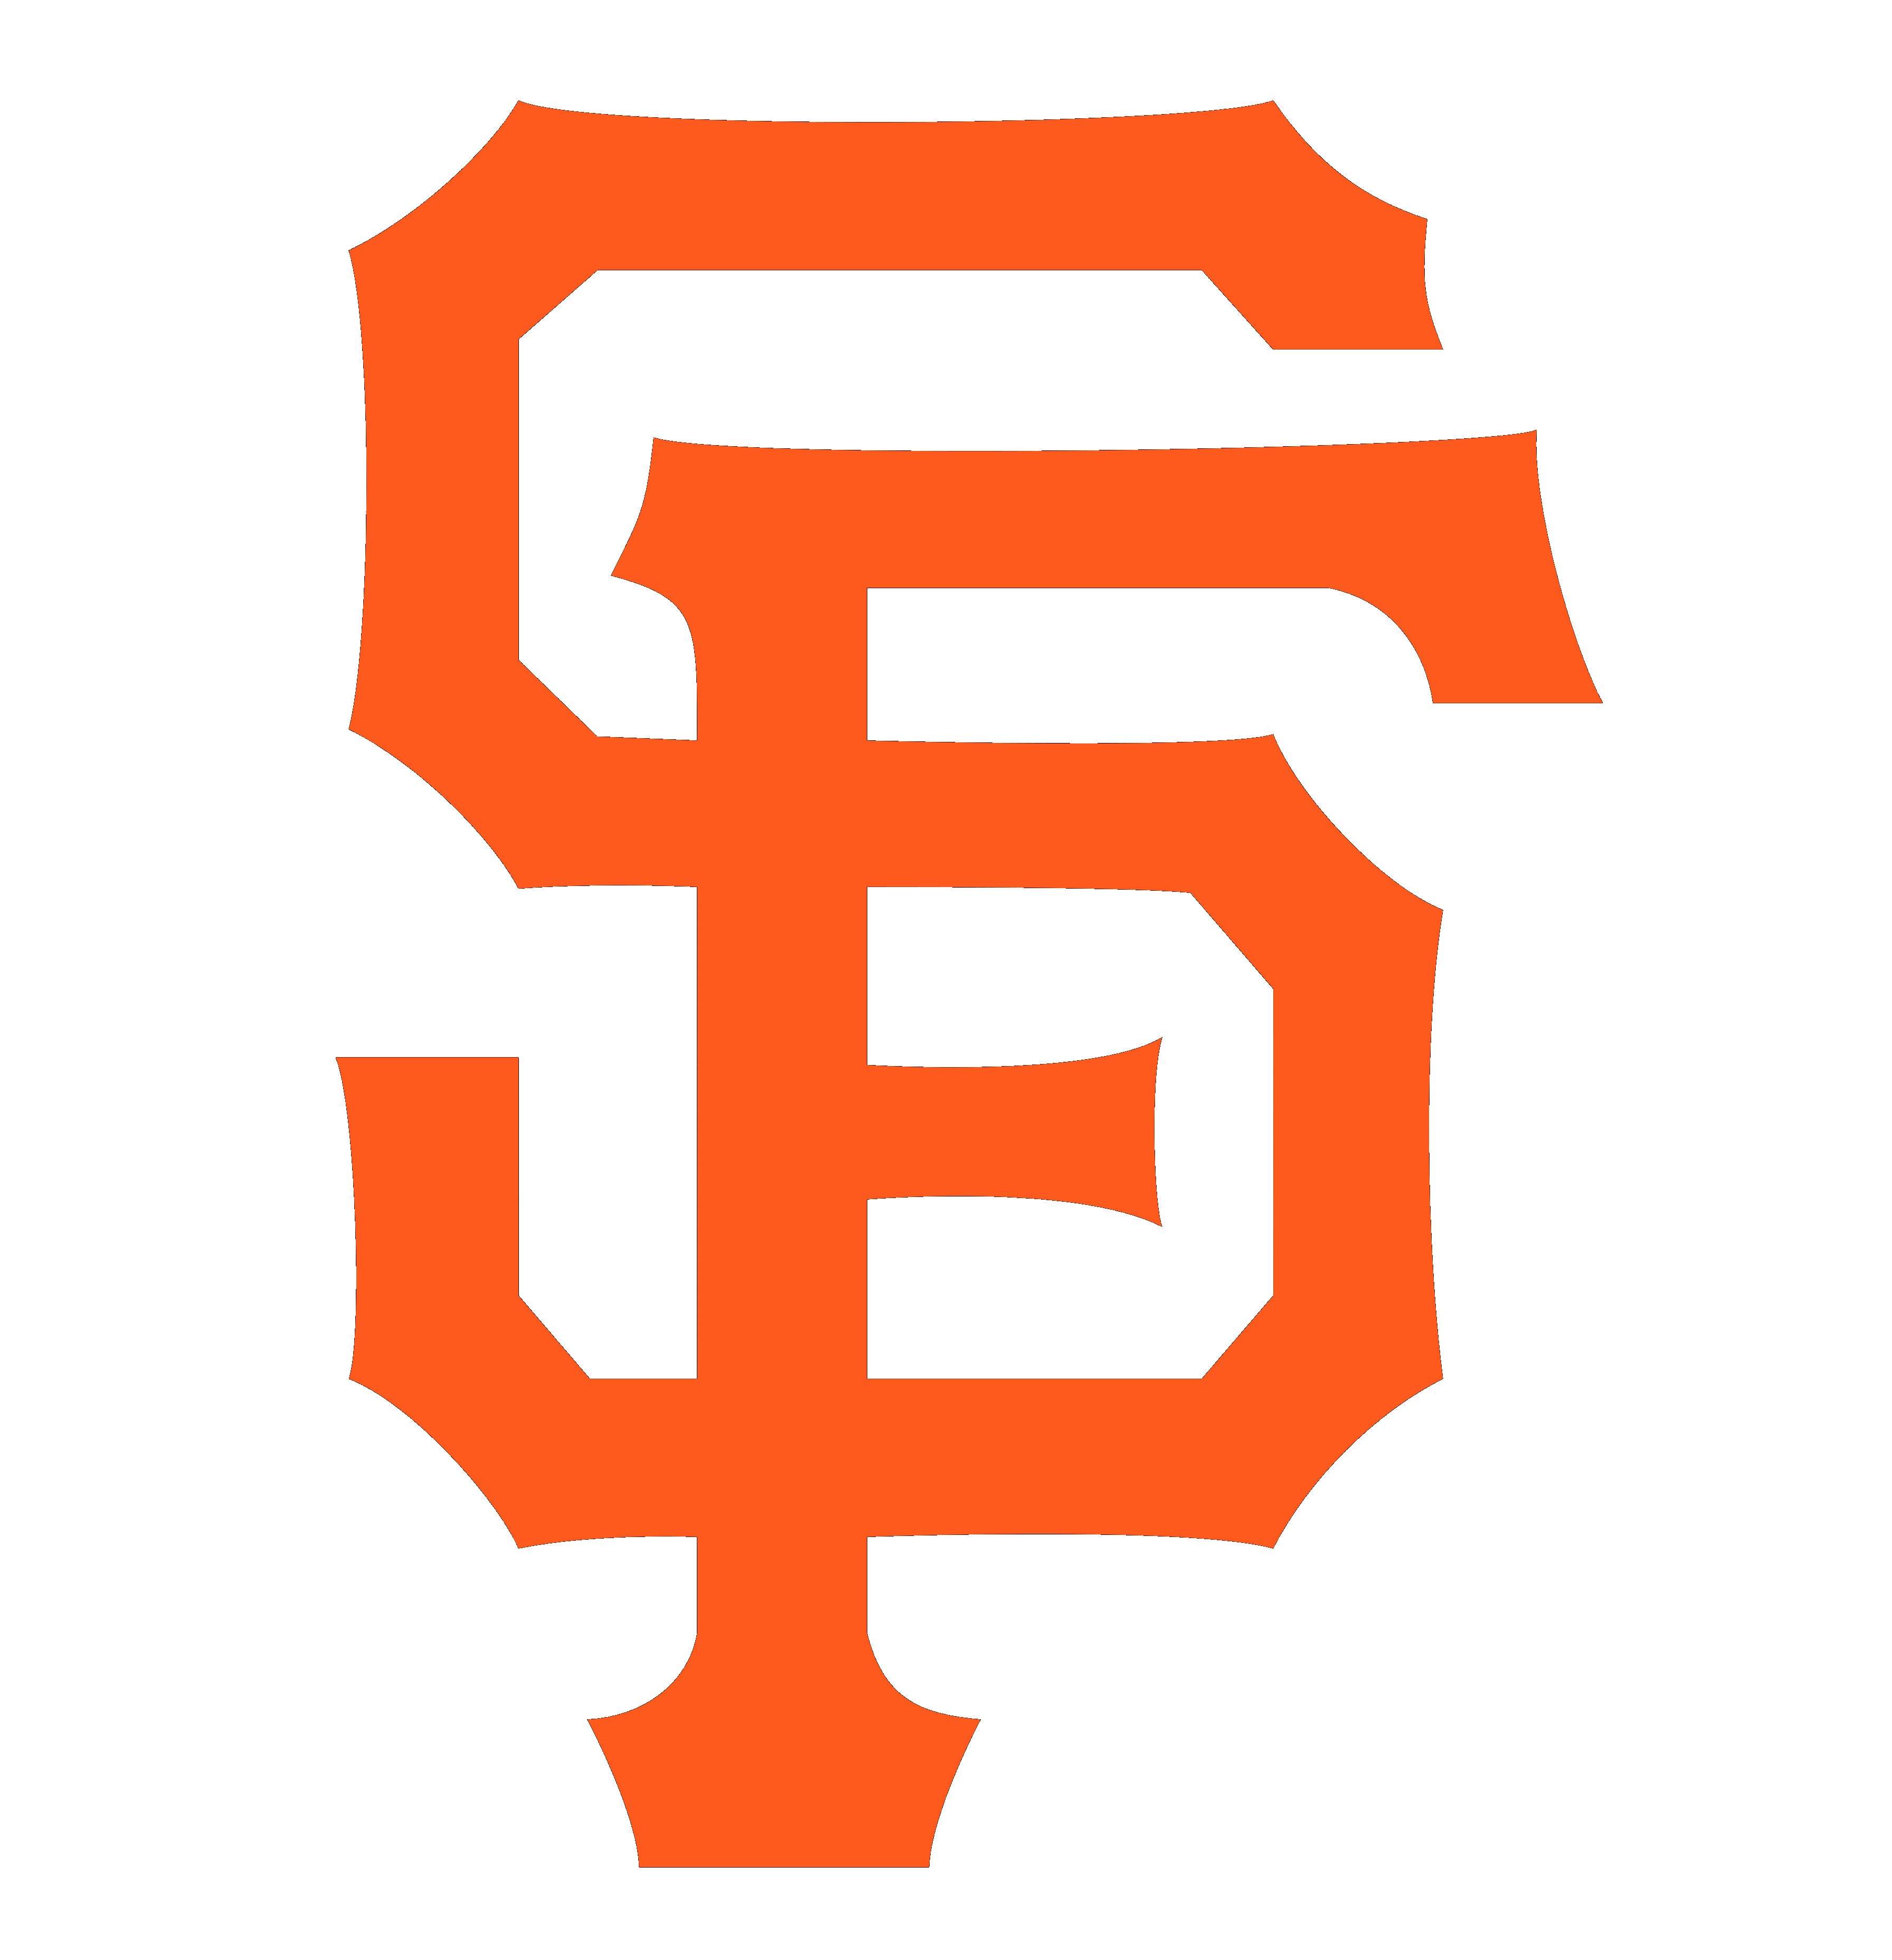 General 3584x3712 San Francisco Giants Major League Baseball logo